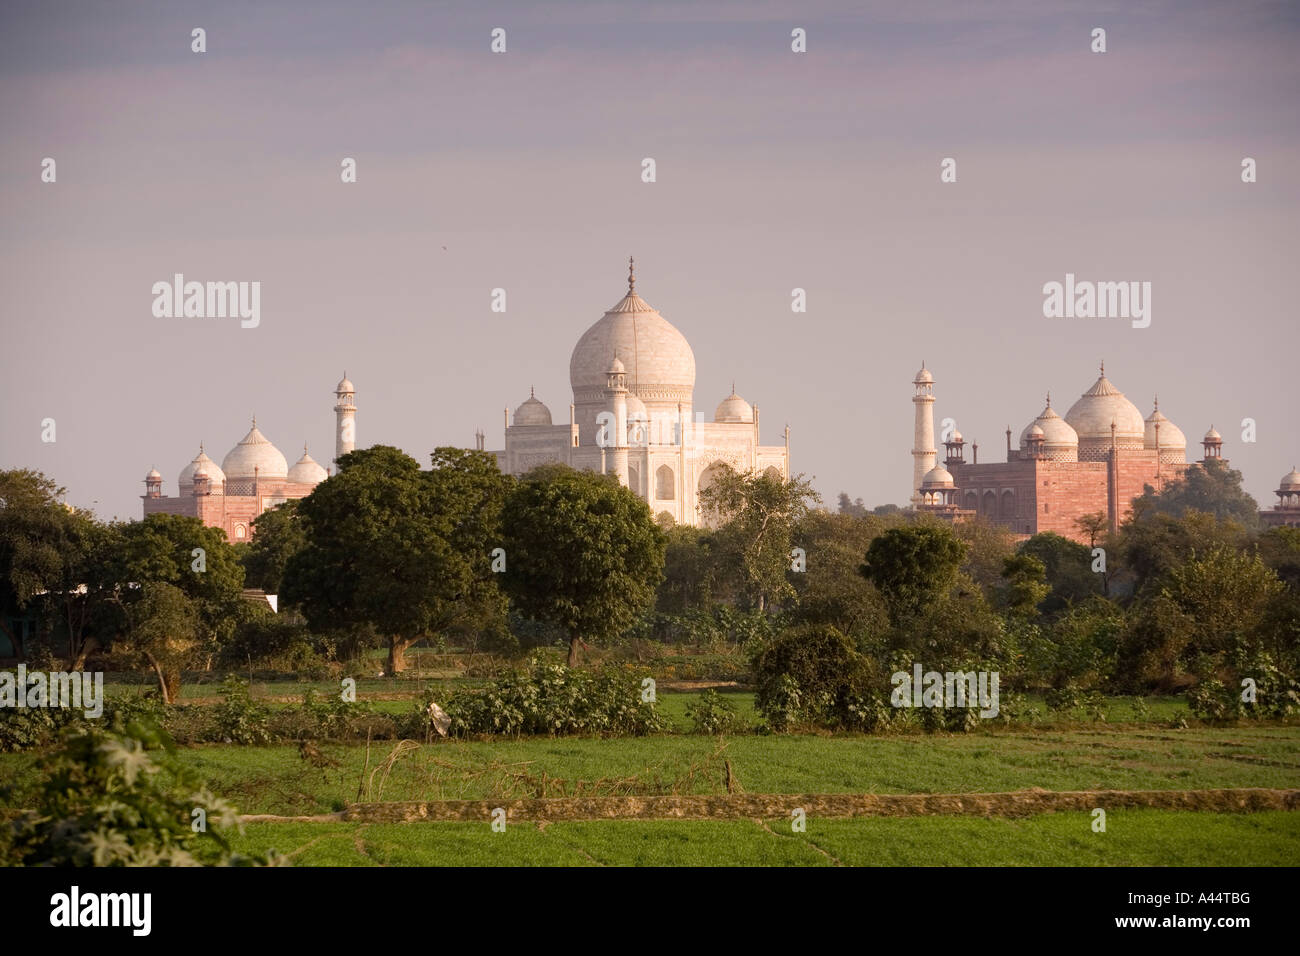 La India Uttar Pradesh Agra Taj Mahal visto desde una distancia a lo largo de los campos Foto de stock